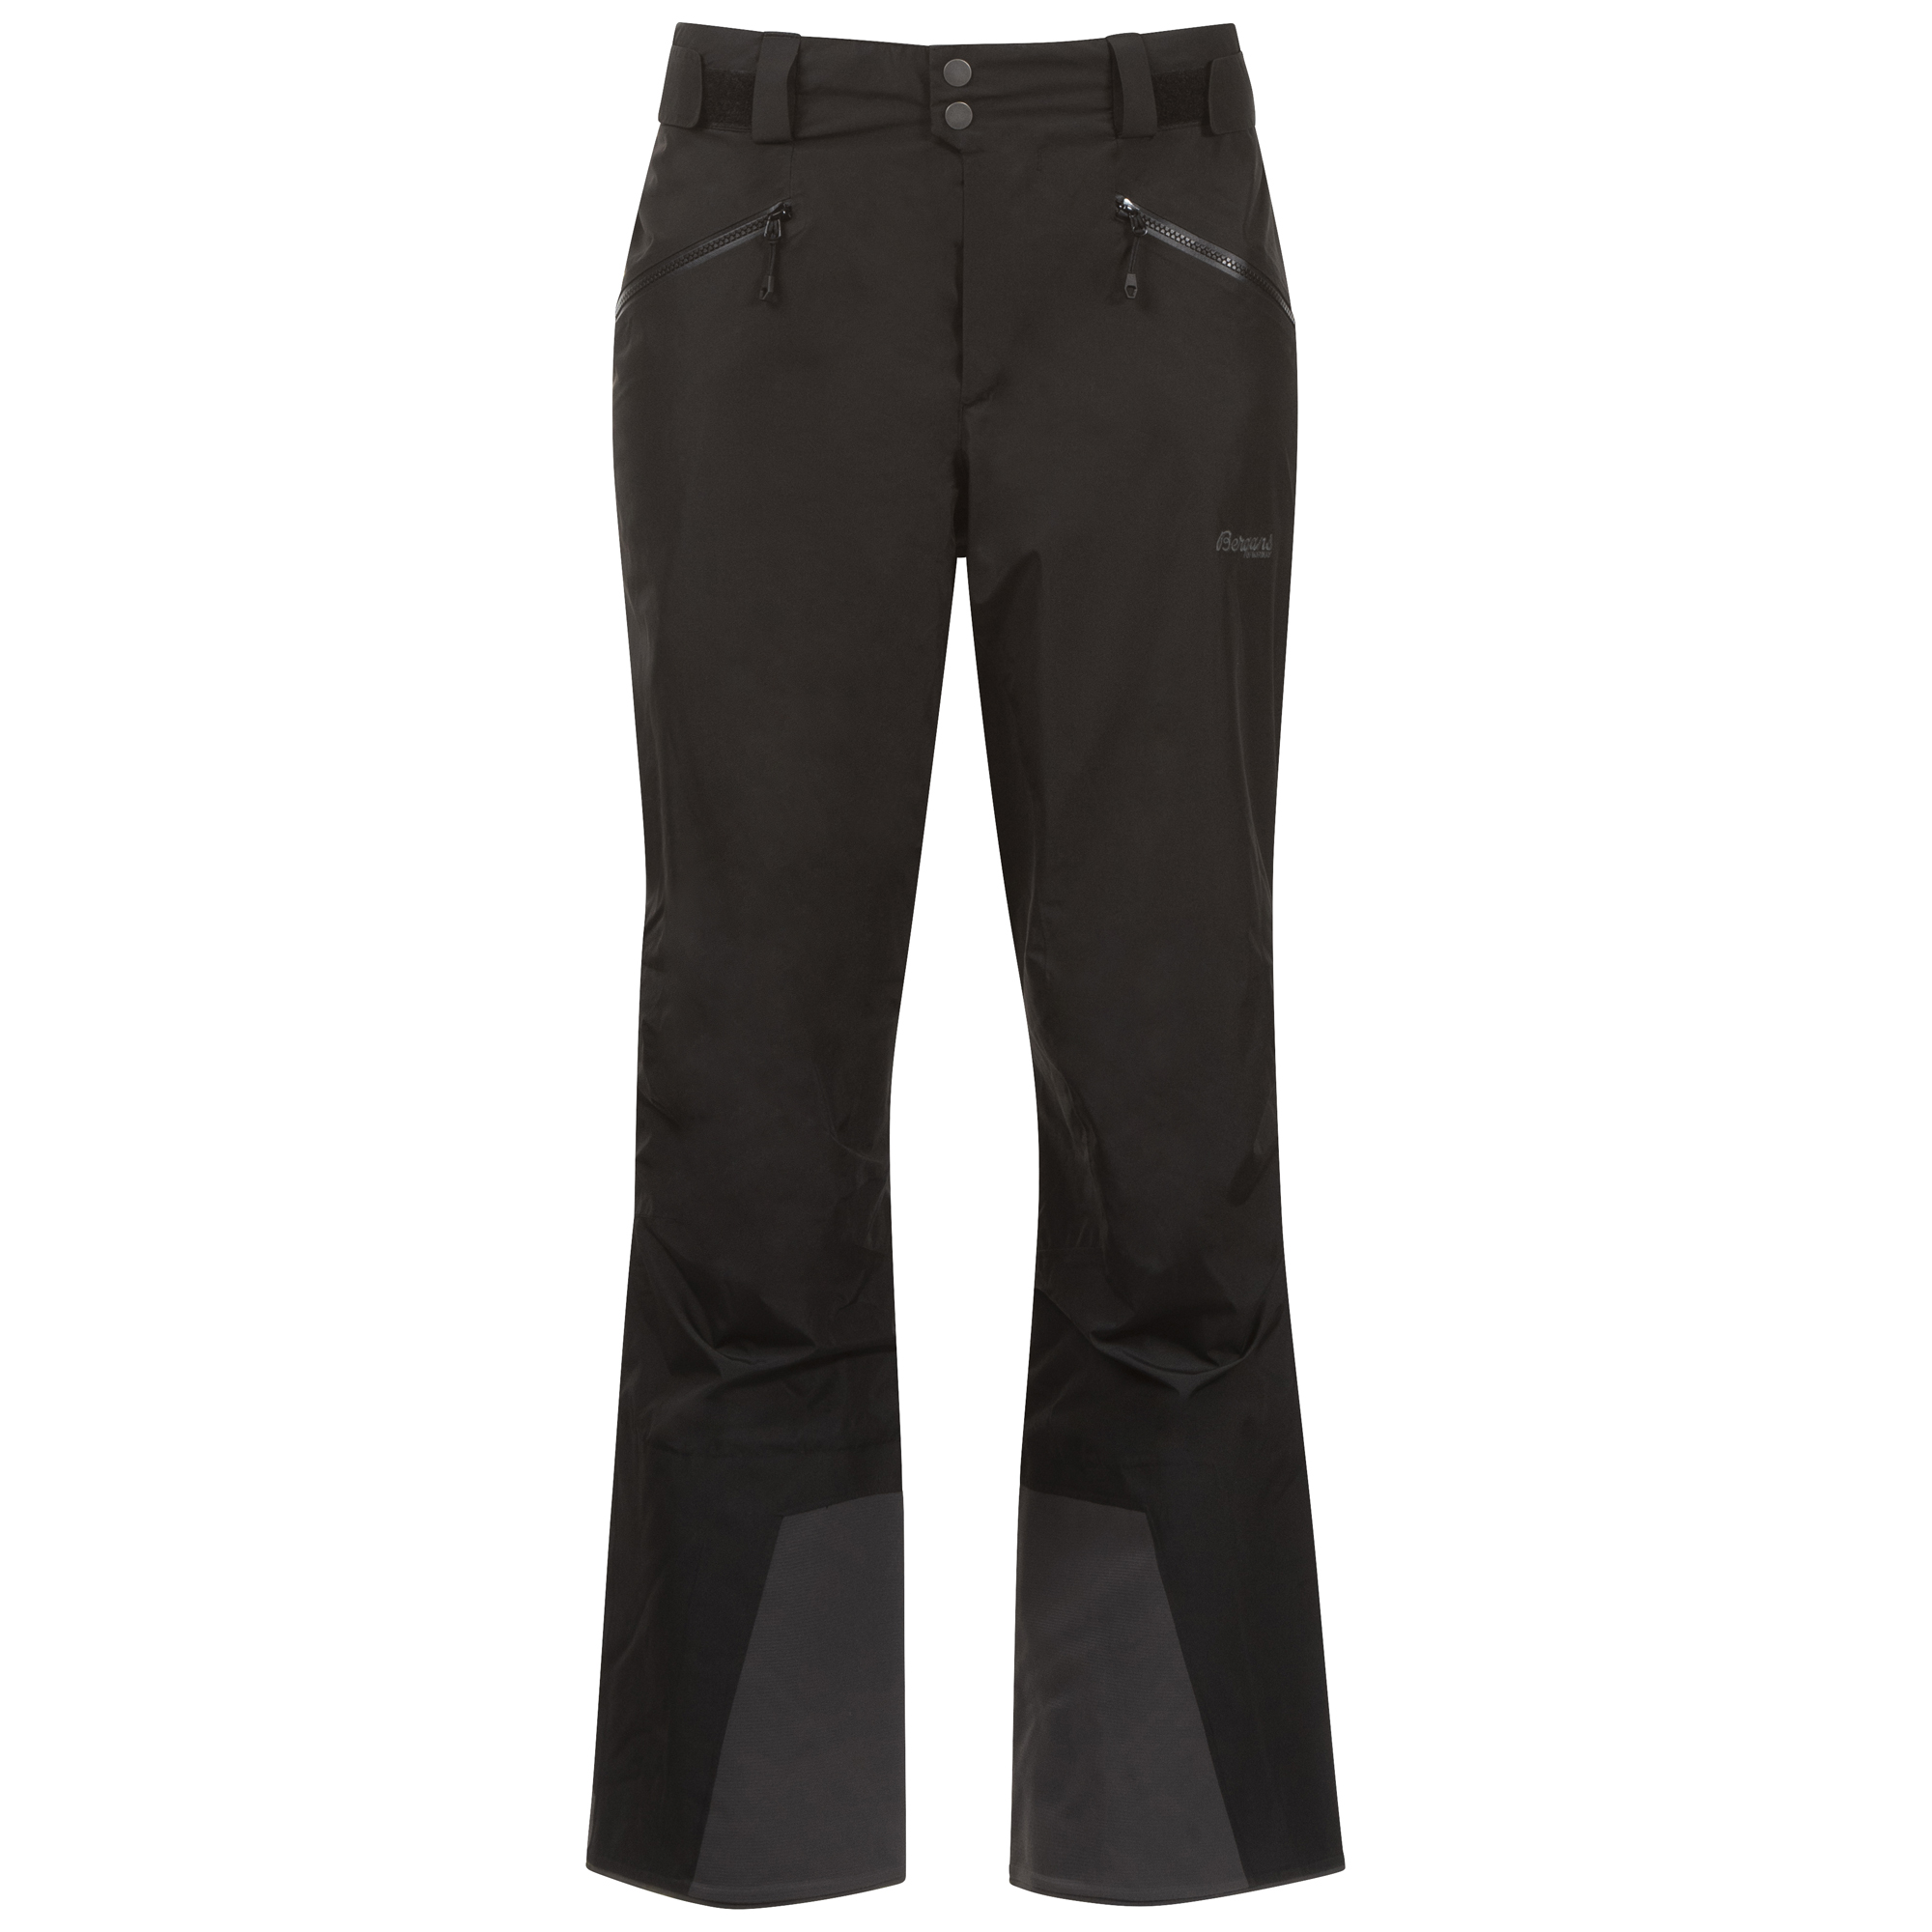 Bergans Women’s Stranda V2 Insulated Pants Black